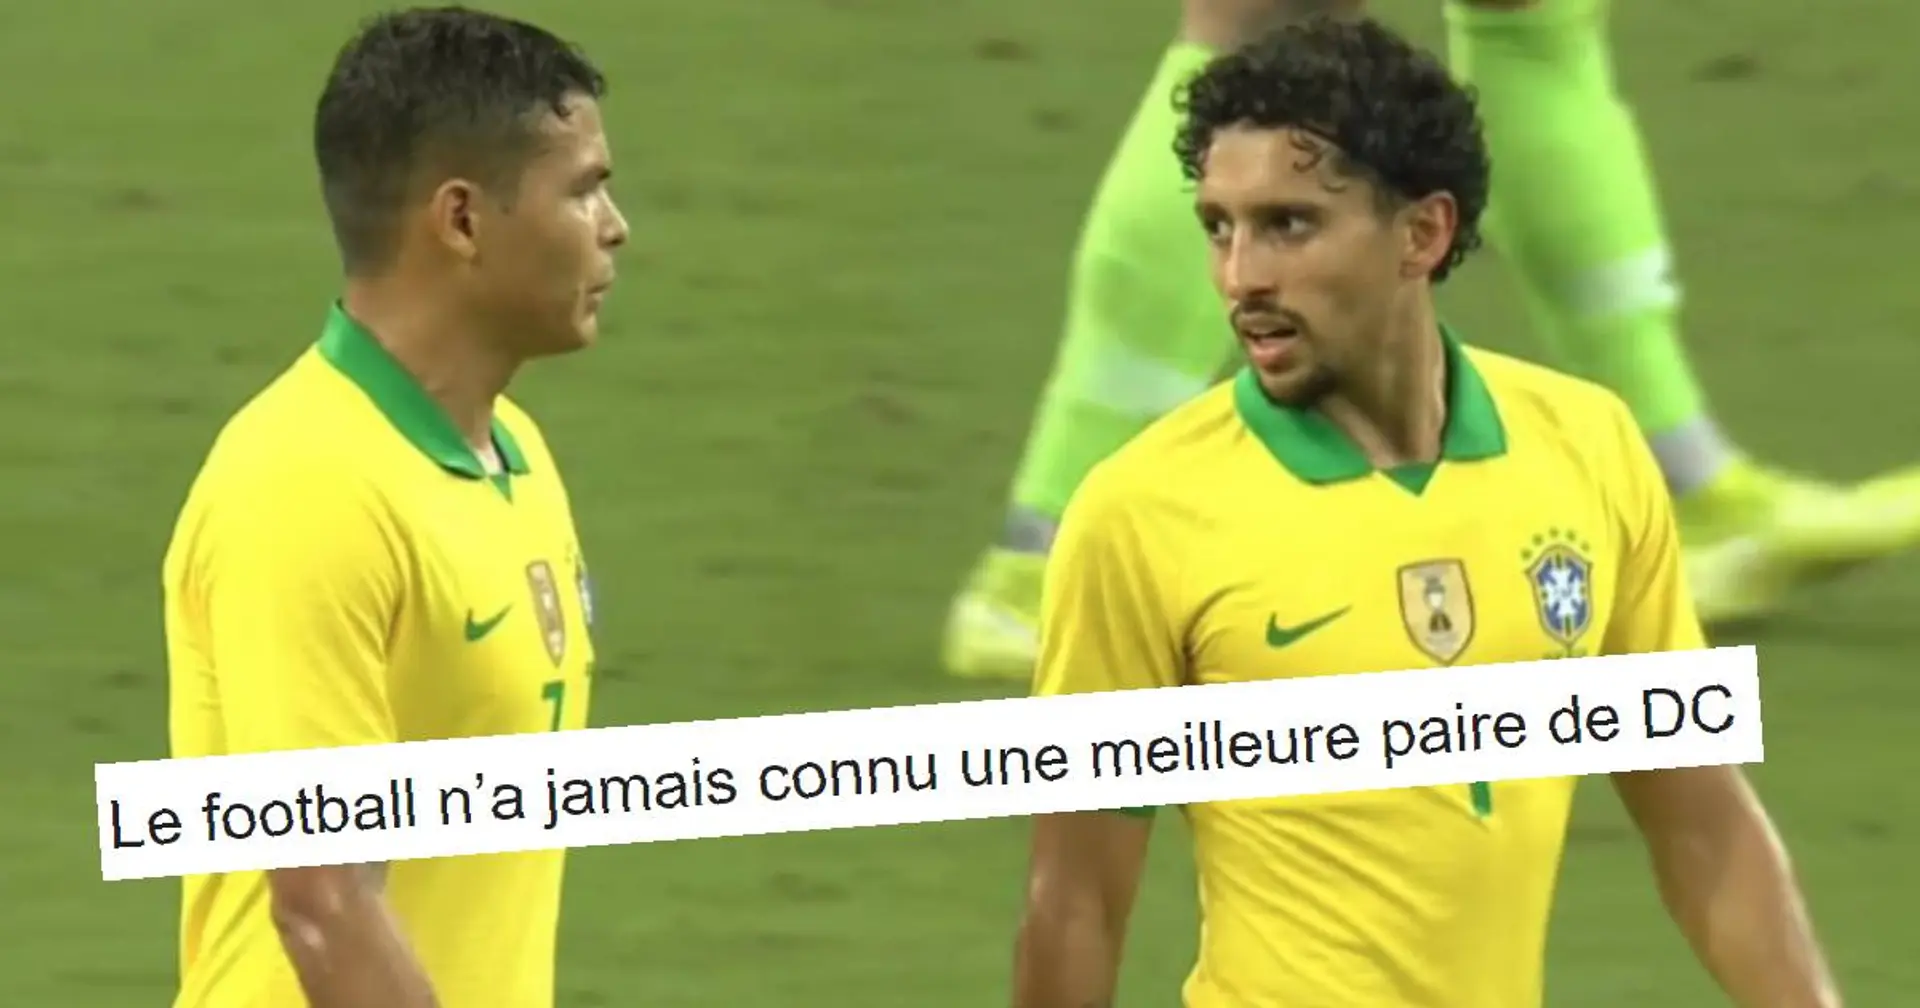 "Ce duo est historique" : les fans brésiliens sont fous amoureux du duo Marquinhos/Thiago Silva